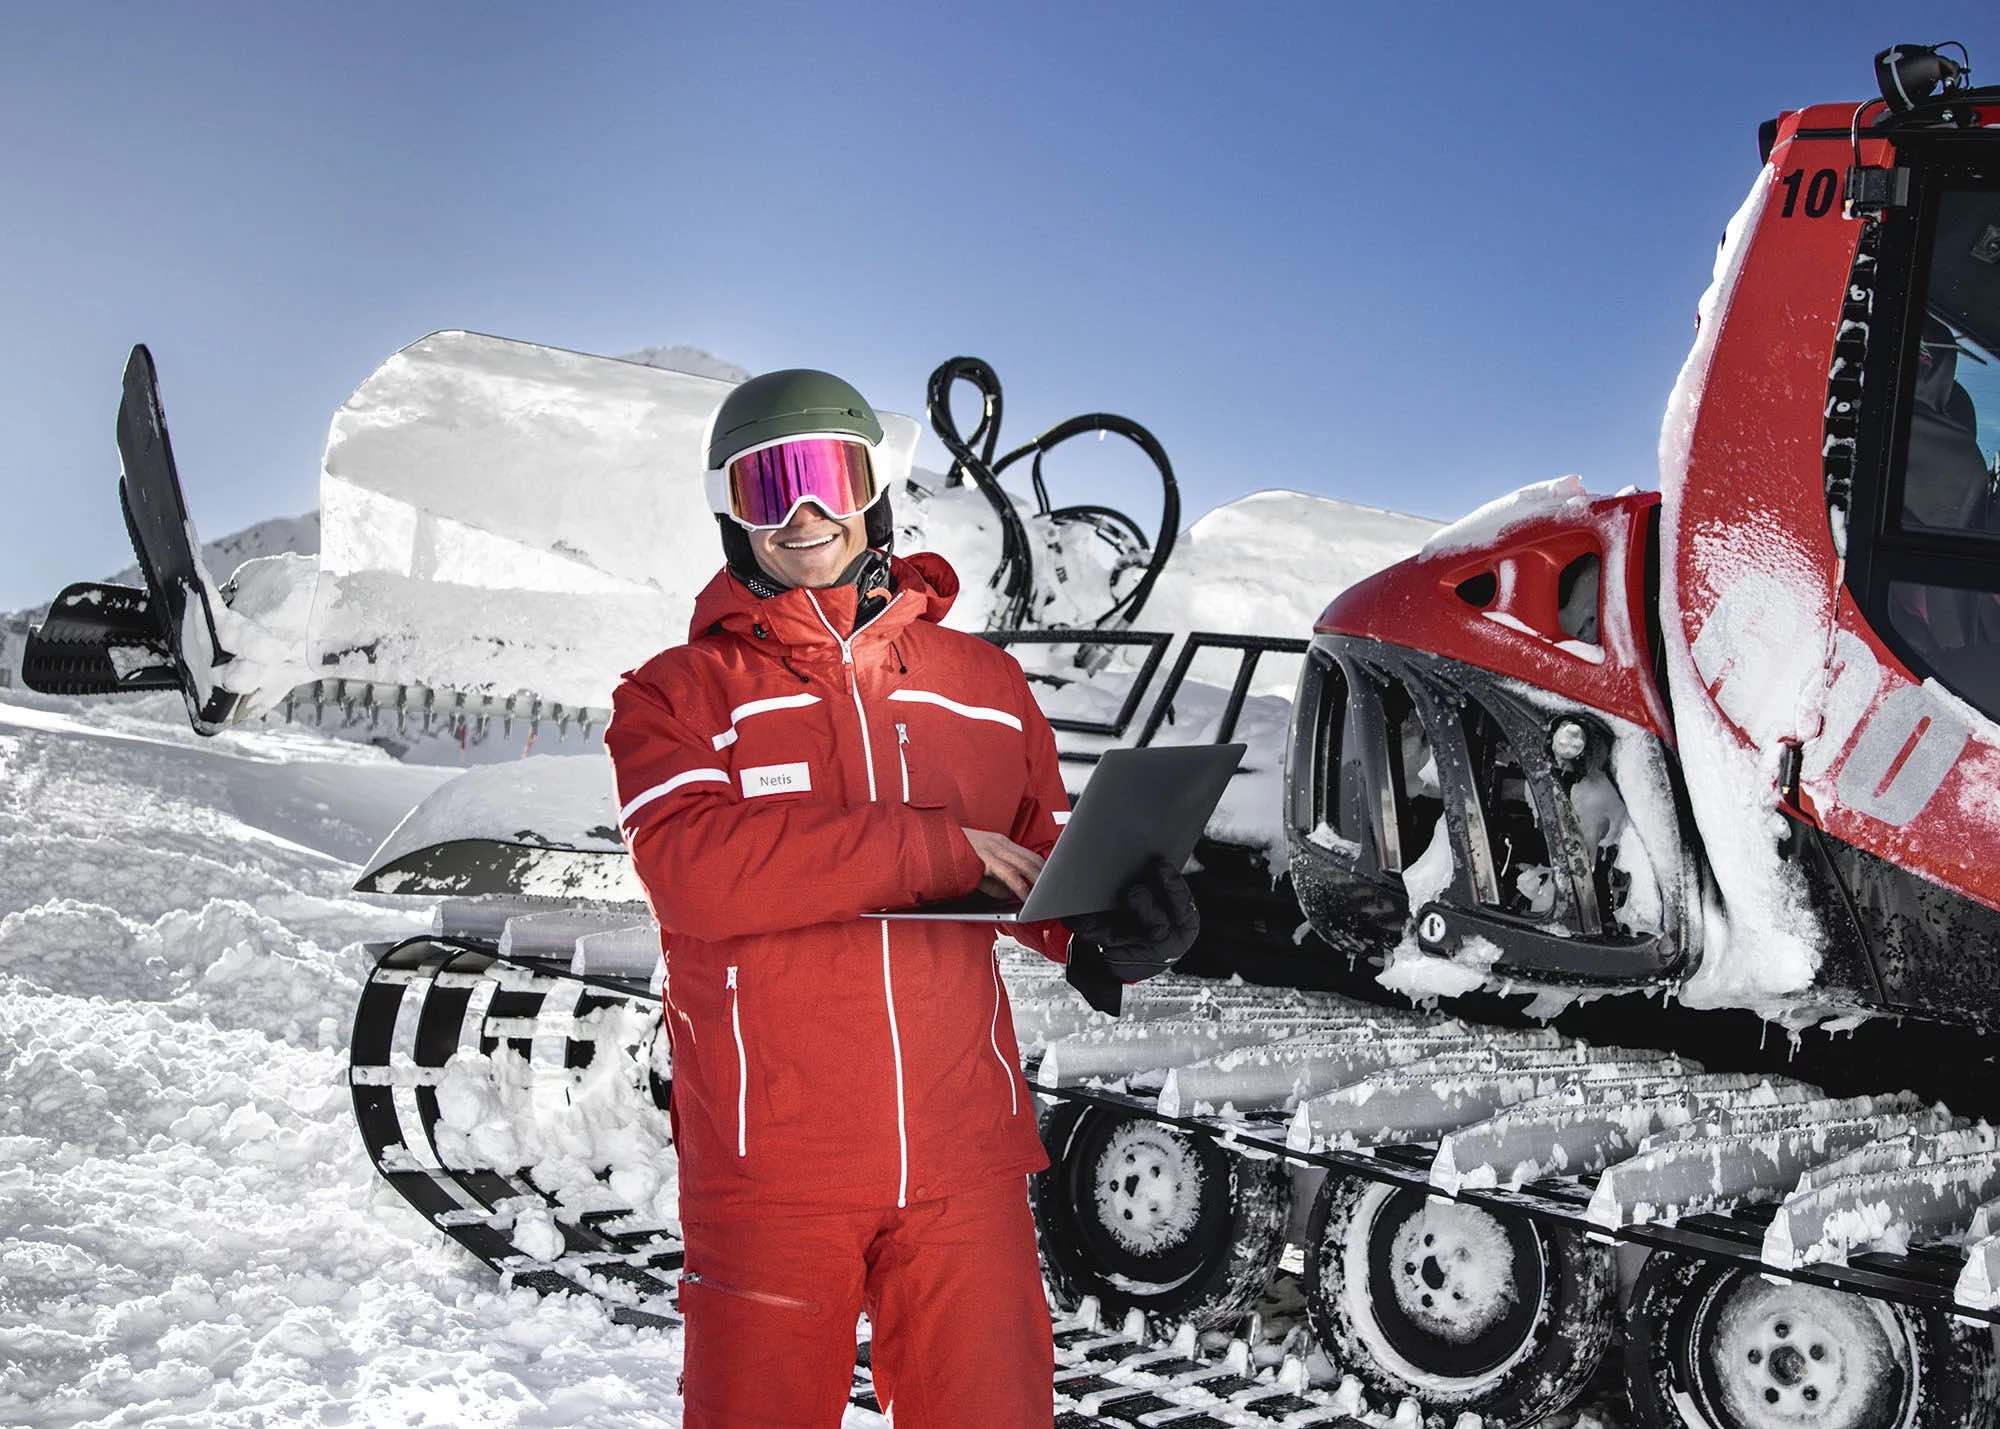 Turismo de Austria crea un chat real con instructores de esquí para combatir la IA